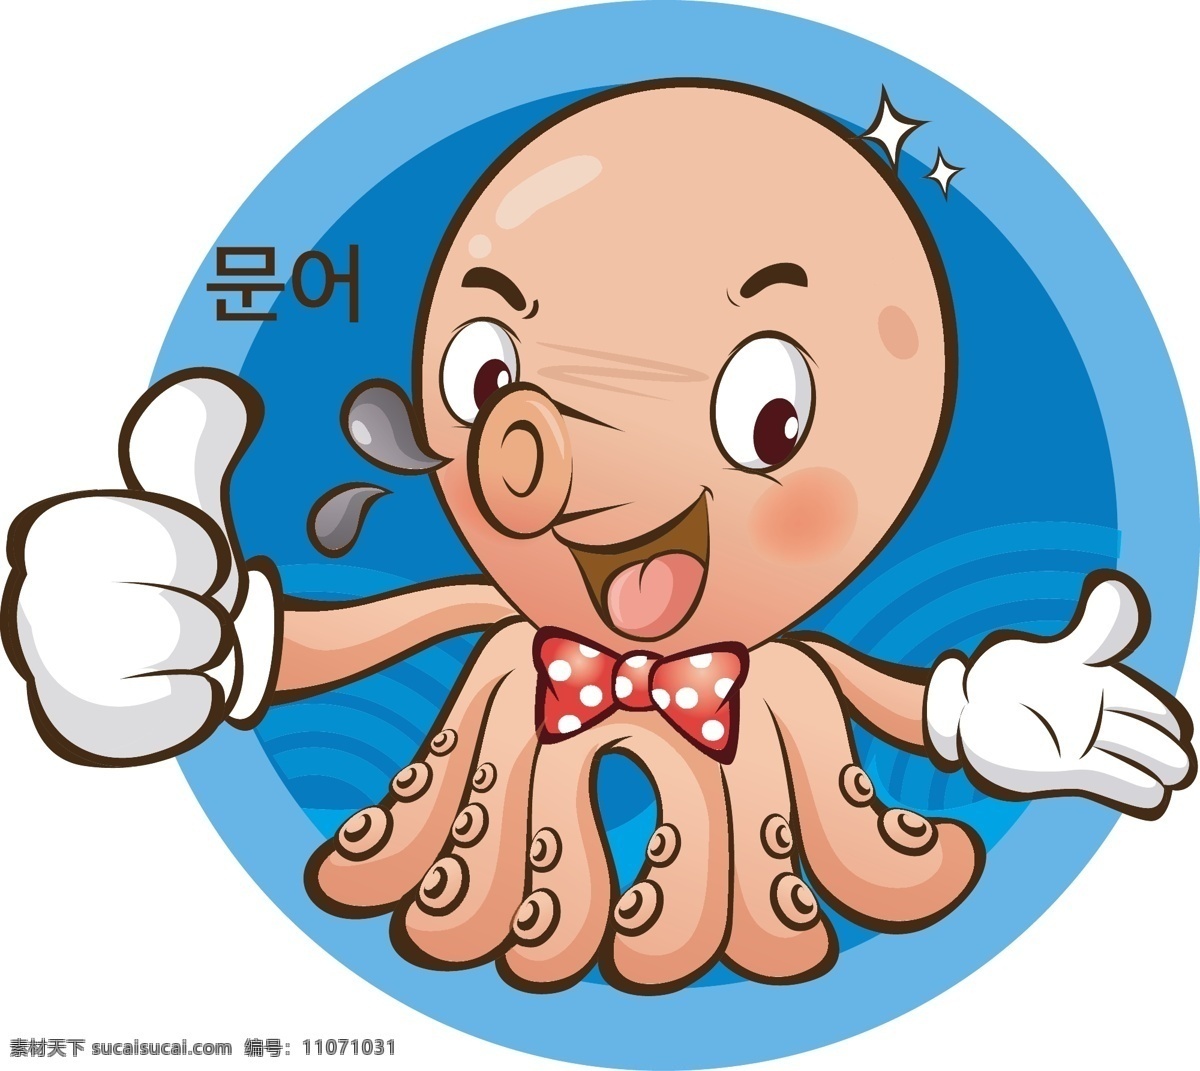 卡通 章鱼 矢量图 动画 海鲜 饮食 章鱼脚 动物 海洋生物 生物世界 矢量 卡通动物 卡通设计